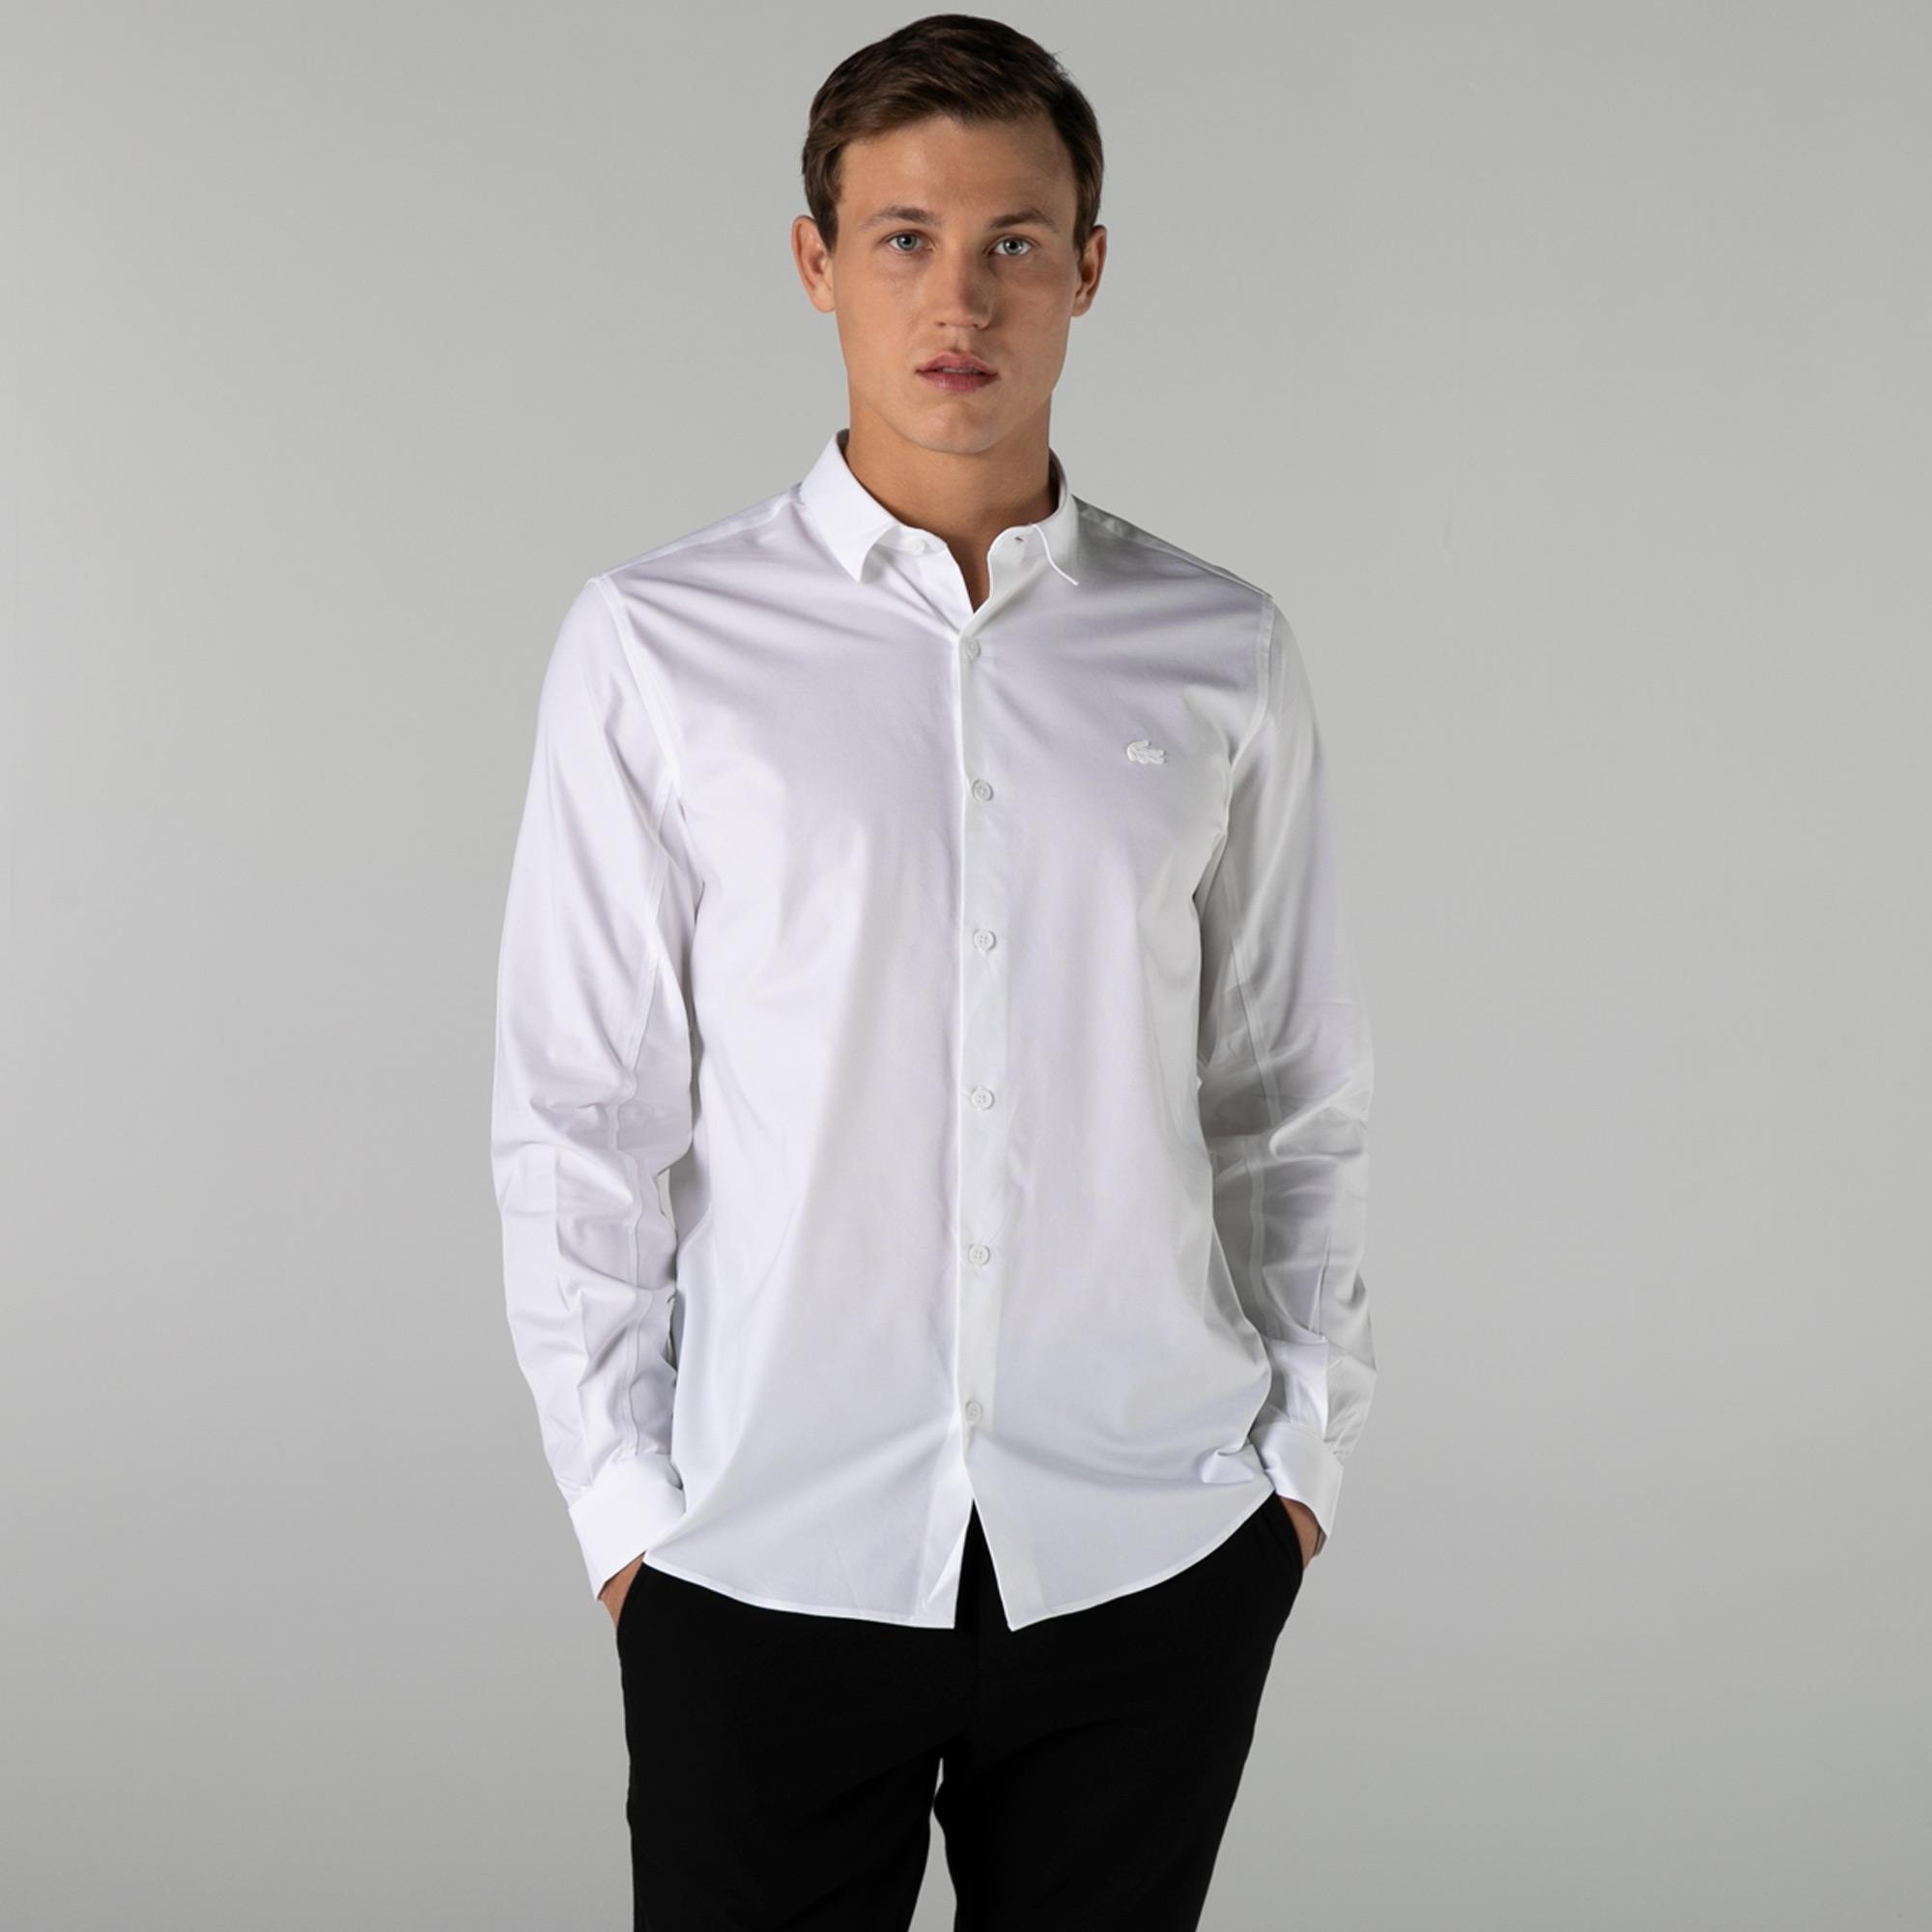 Lacoste Men's Motion Breathable Stretch Cotton Shirt